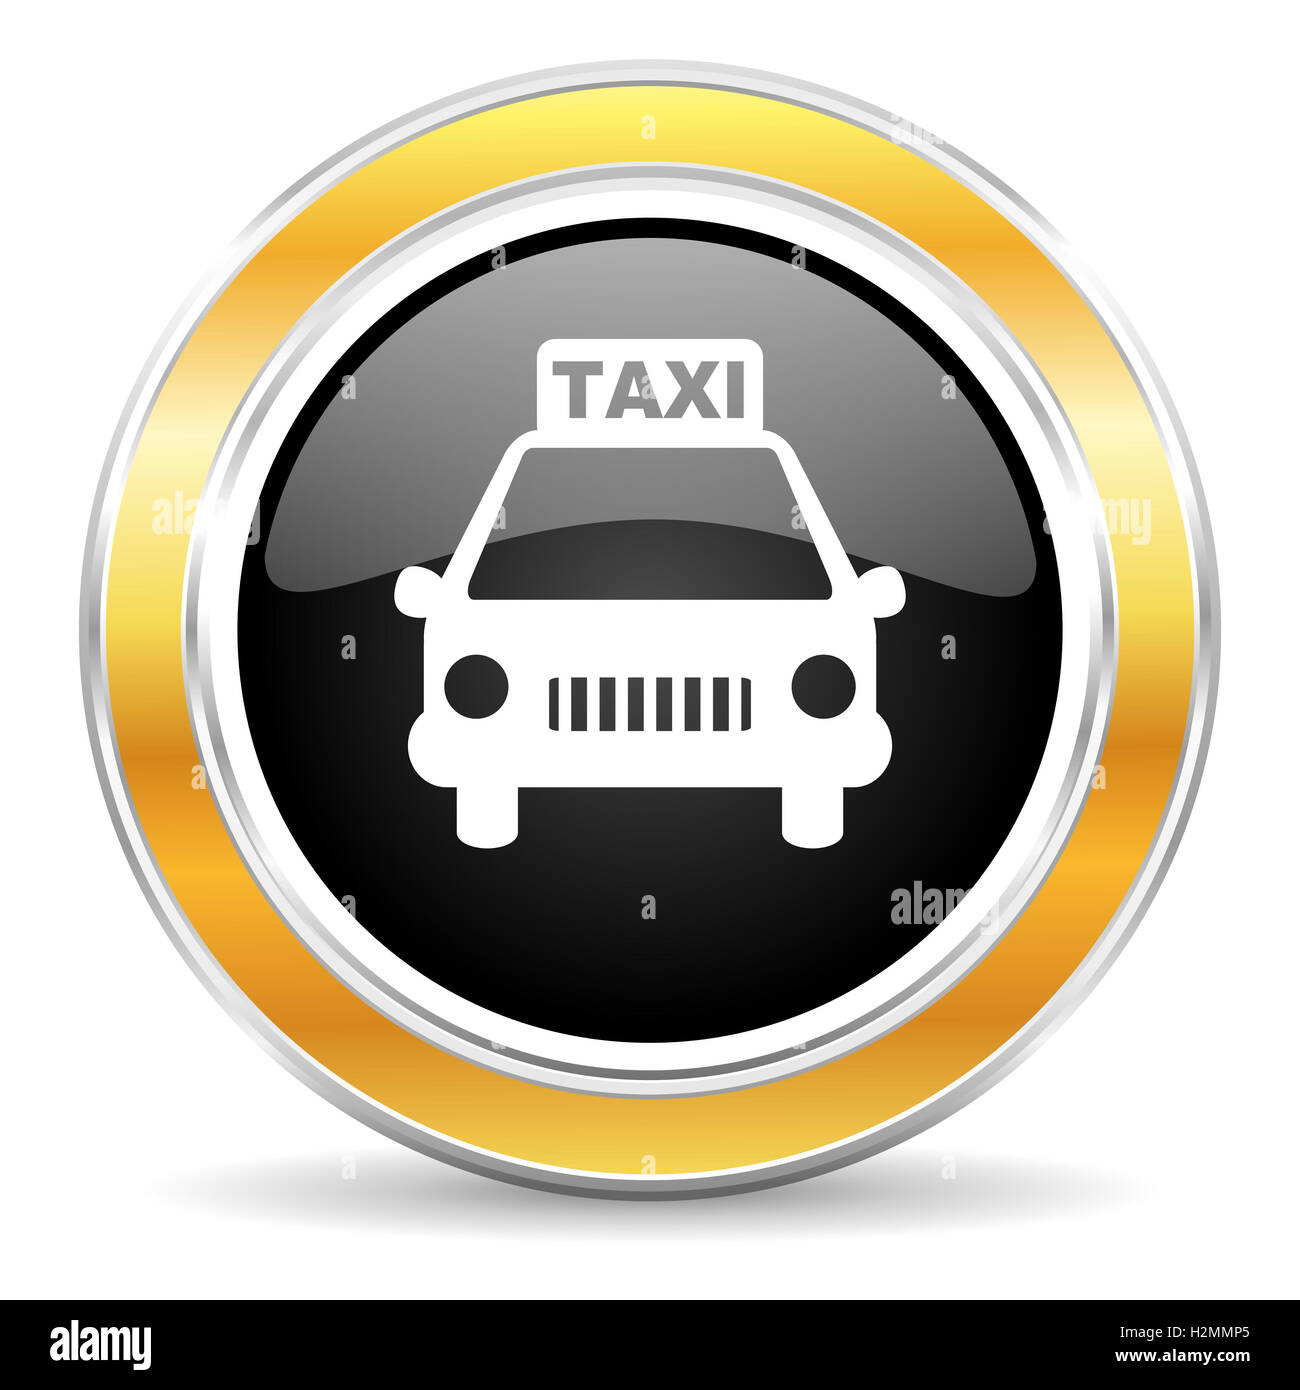 taxi icon Stock Photo